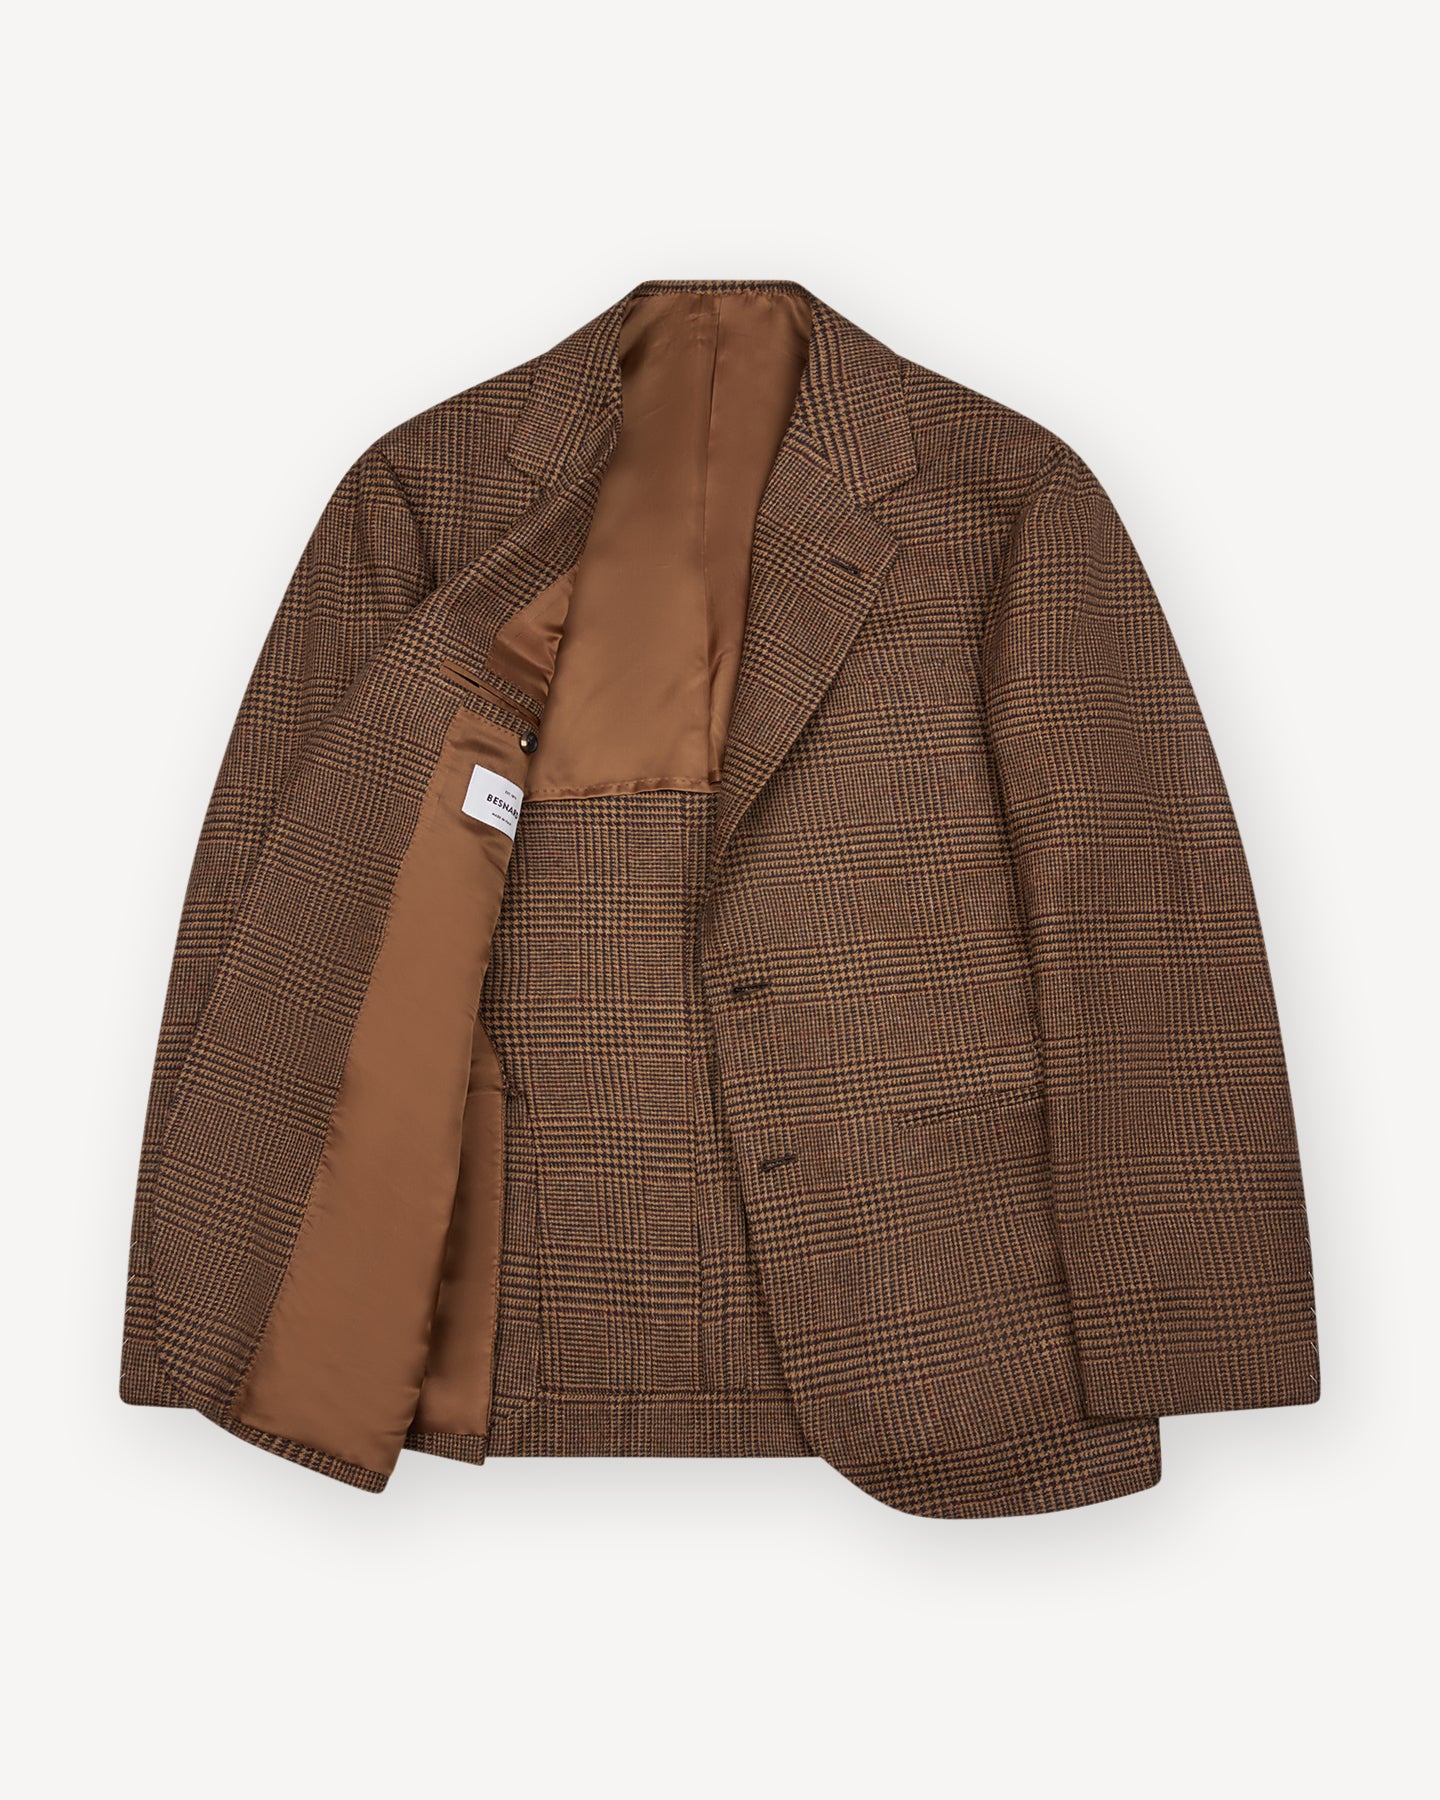 Half lined Brown Prince of Wales Merino Wool Sport Coat